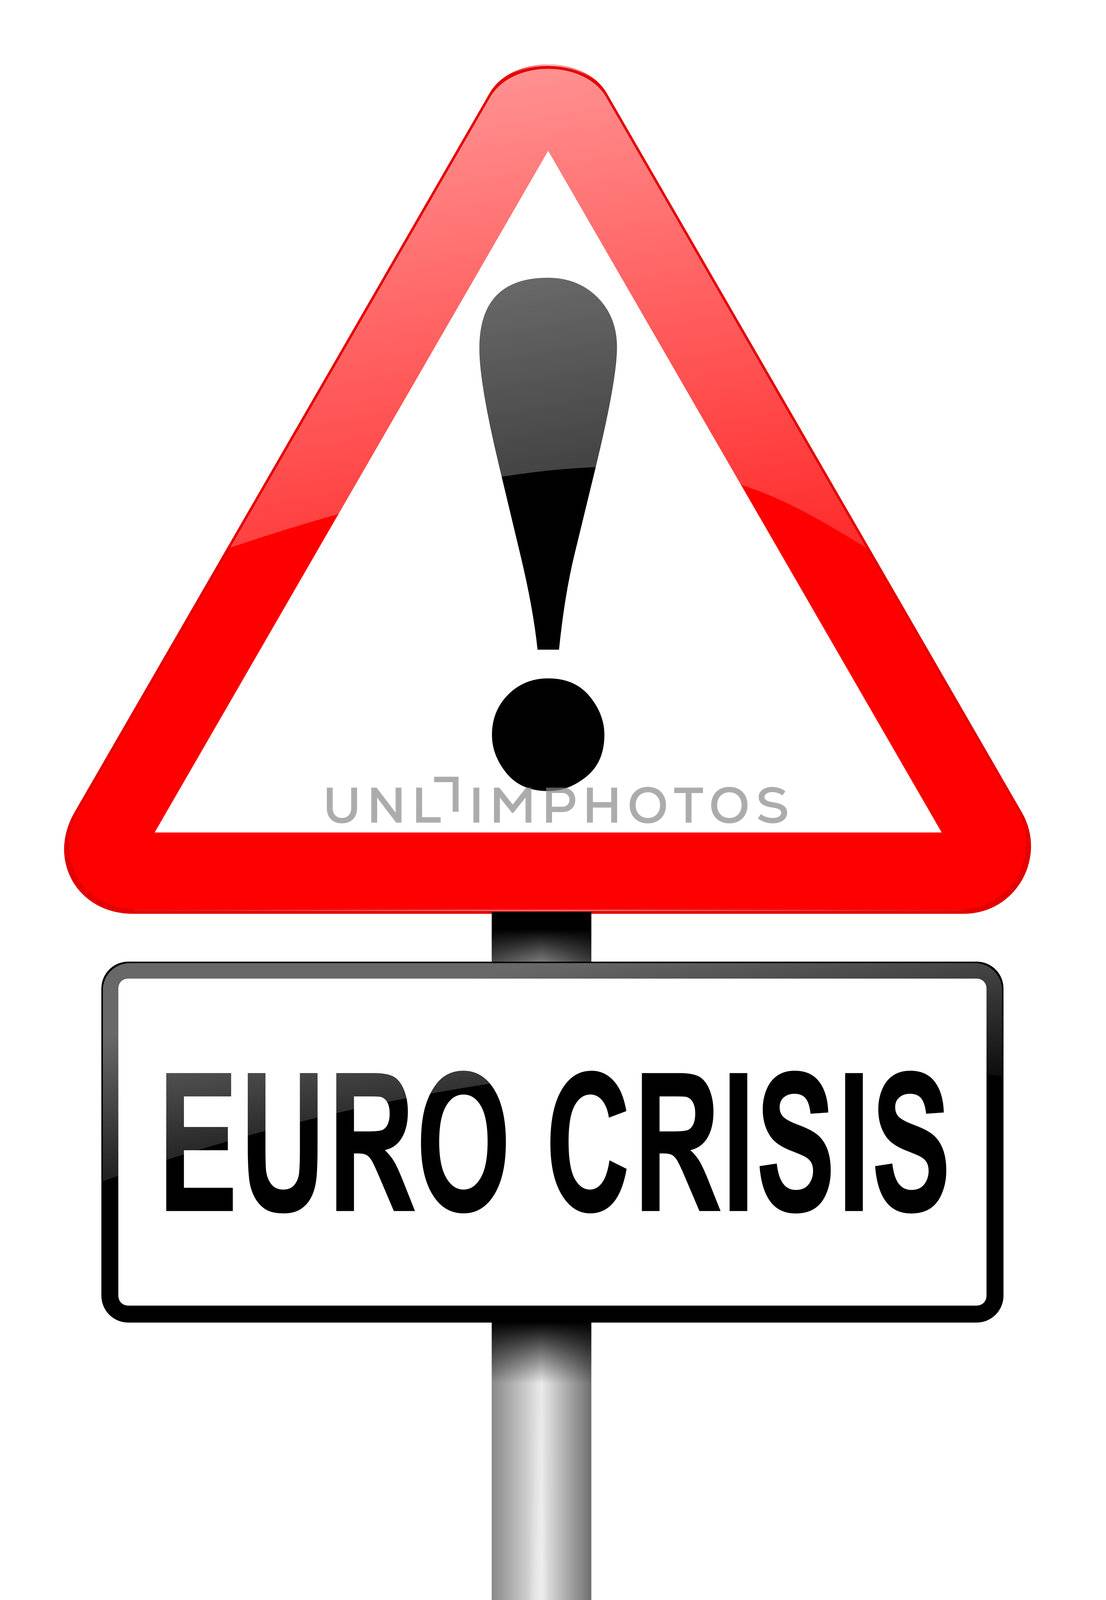 Euro crisis concept. by 72soul